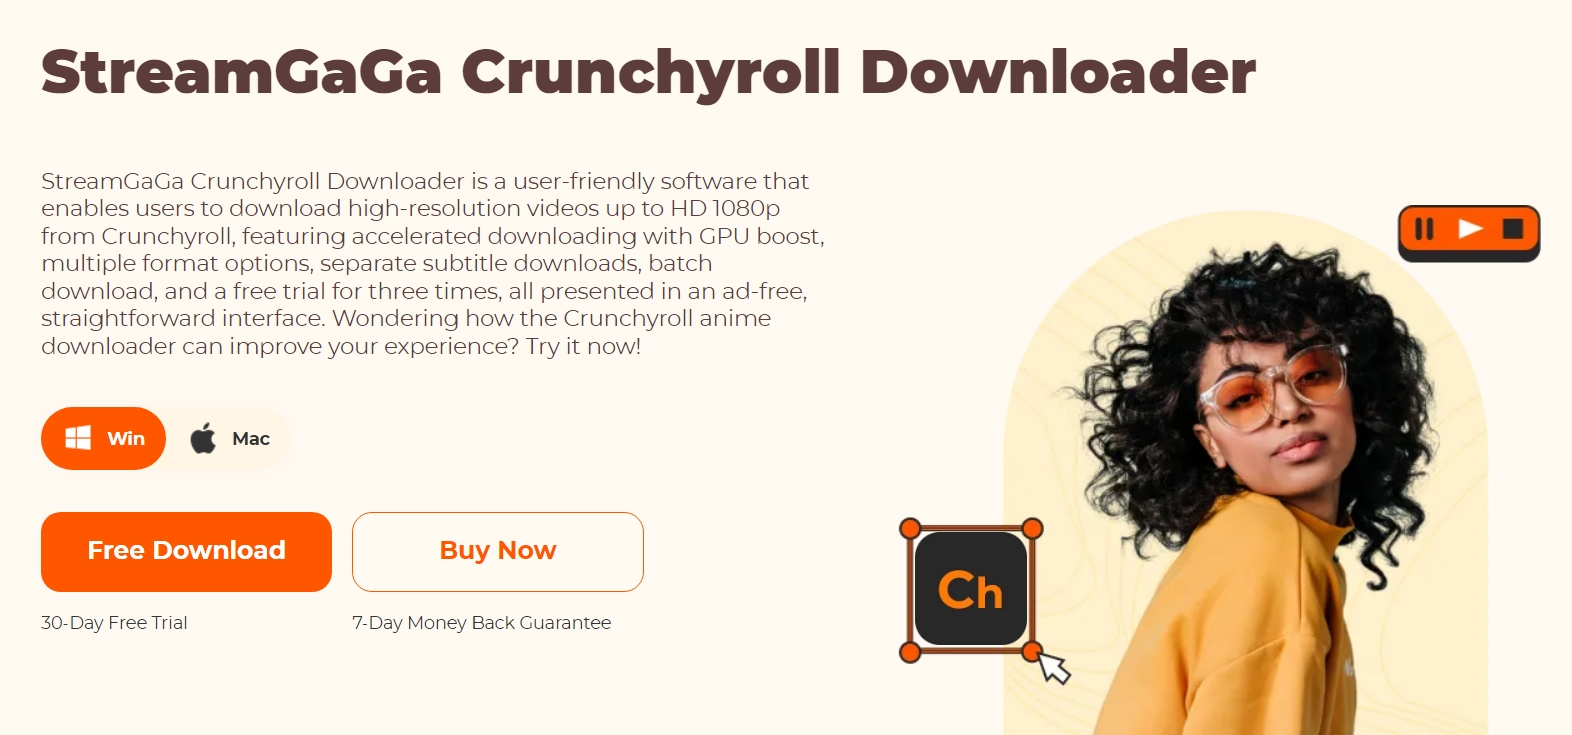 Crunchyroll agora tem função de baixar episodios dos animes - Diolinux Feed  - Diolinux Plus